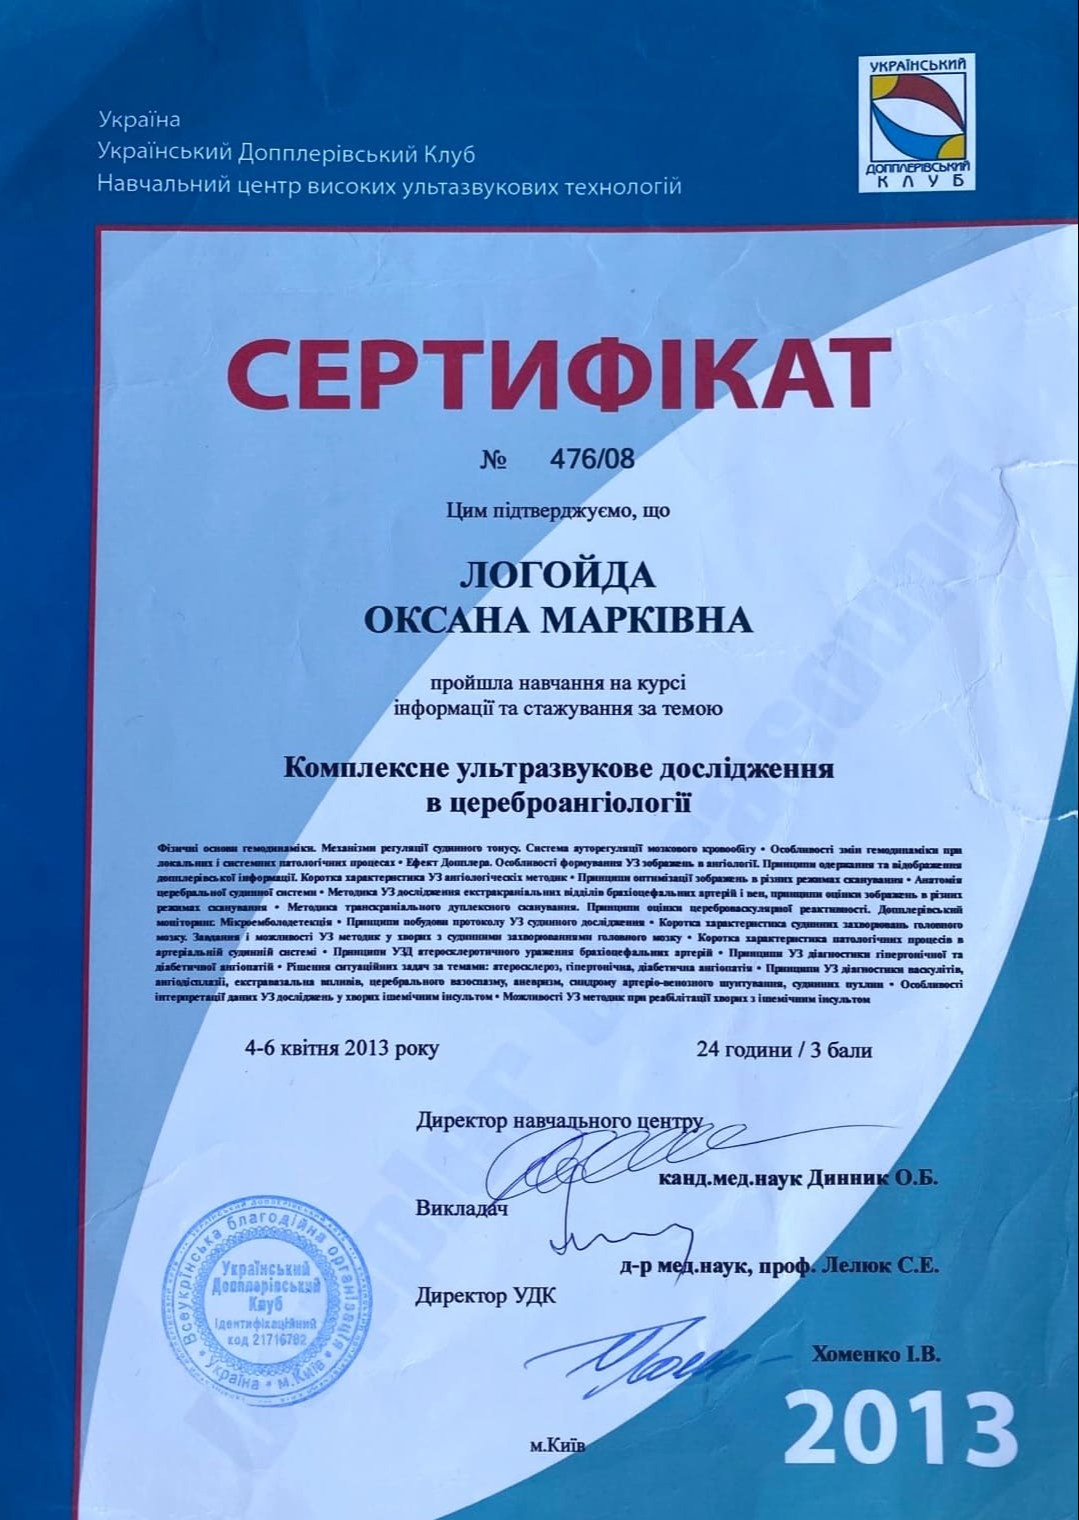 Сертификат о прохождении обучения на курсе информации и стажировки по теме Комплексное ультразвуковое исследование в цереброангиологии 